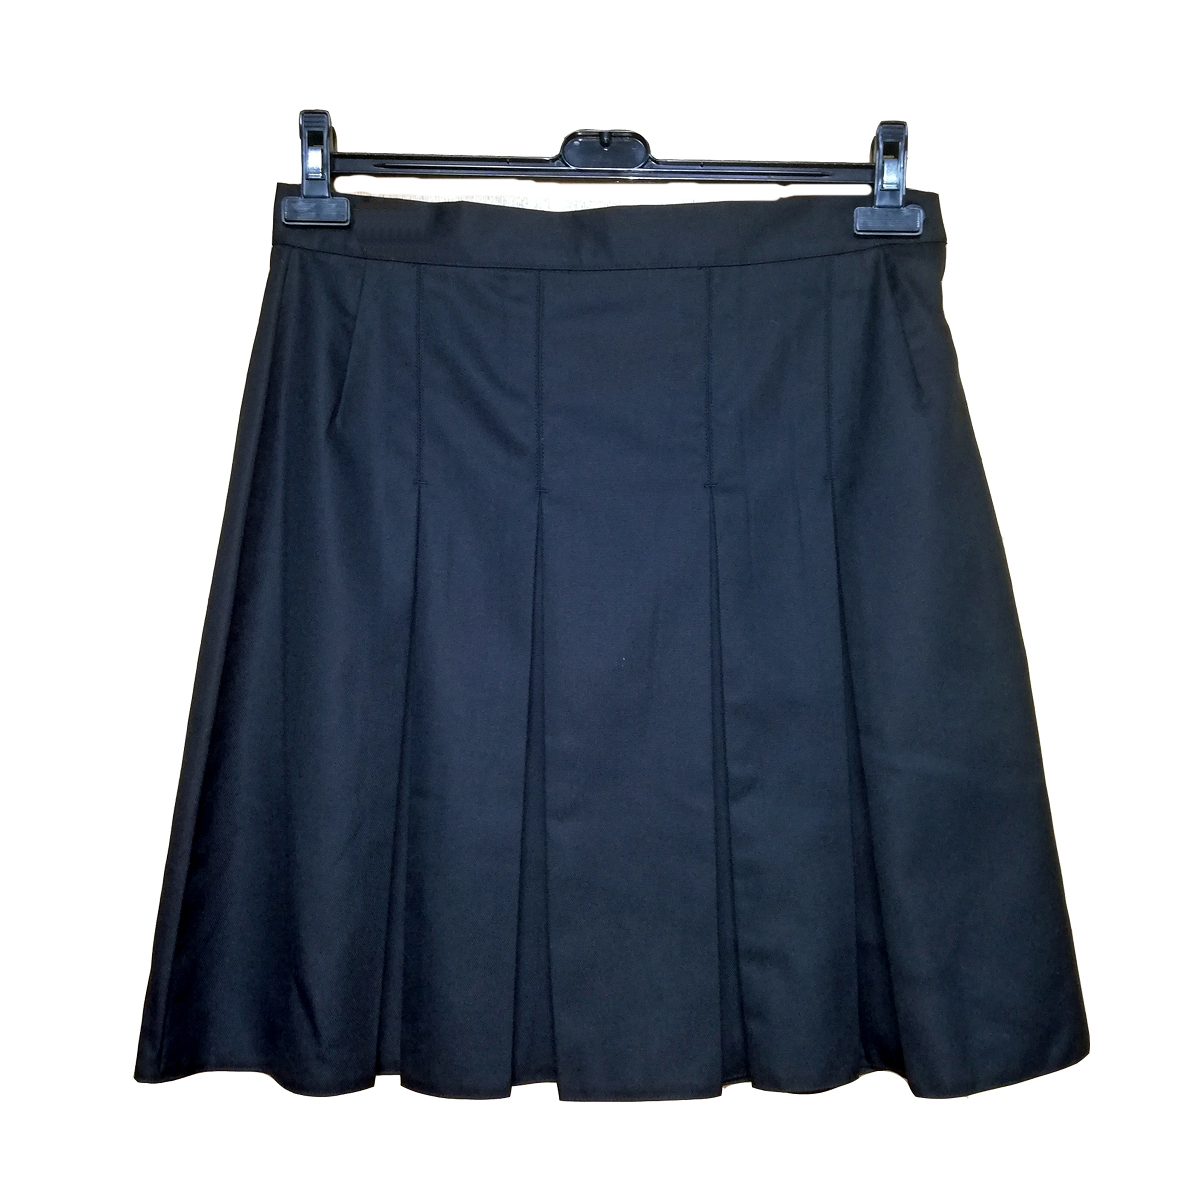 Pleated Black Skirt 